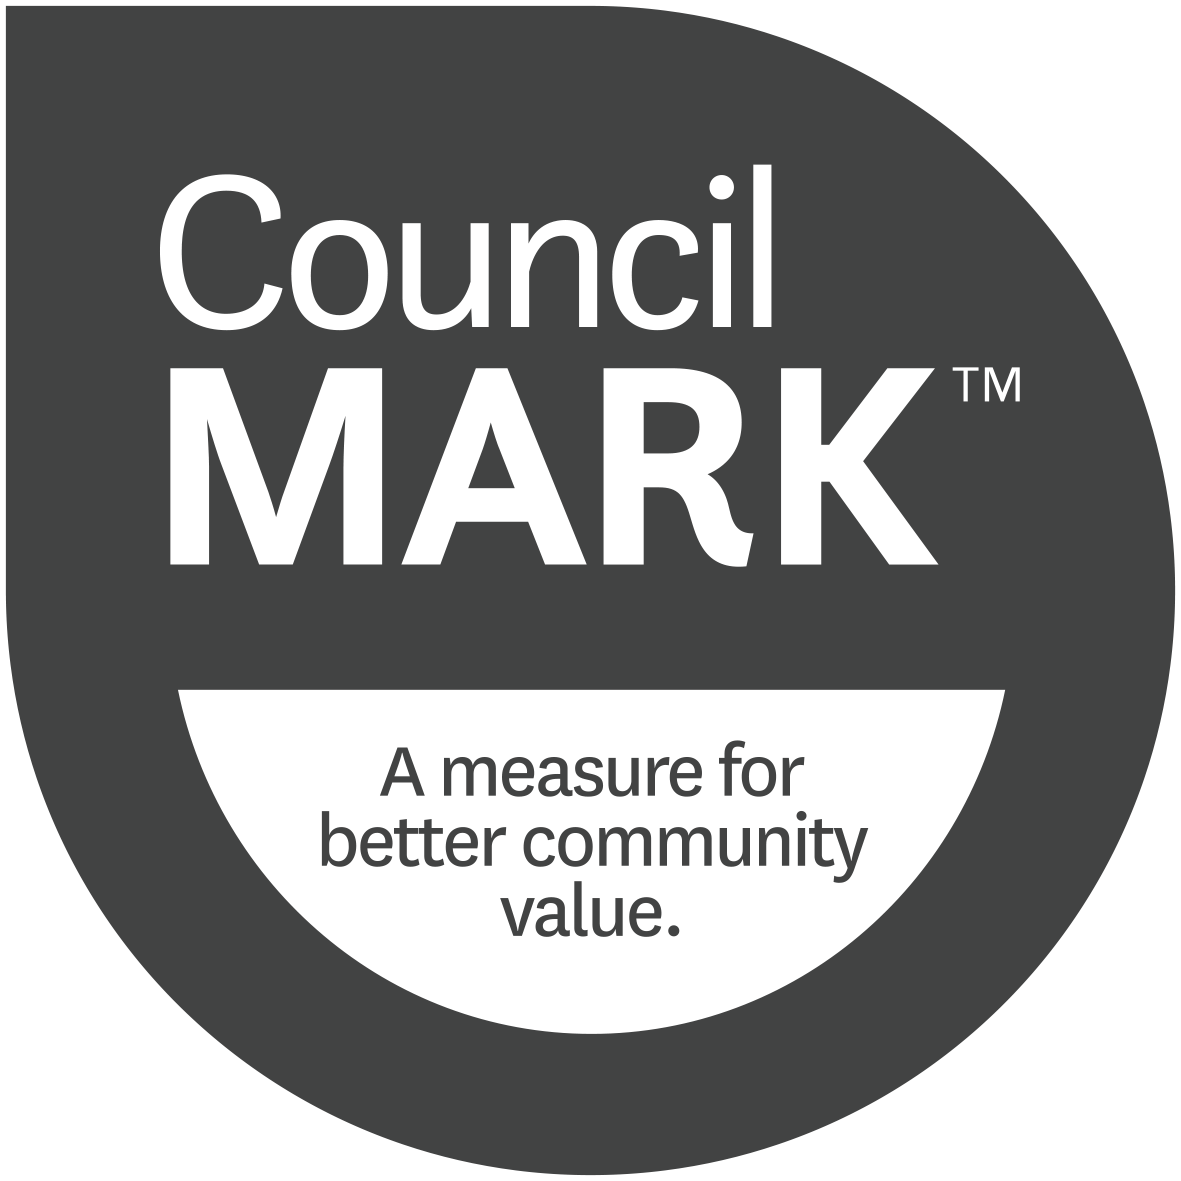 The Council Mark logo